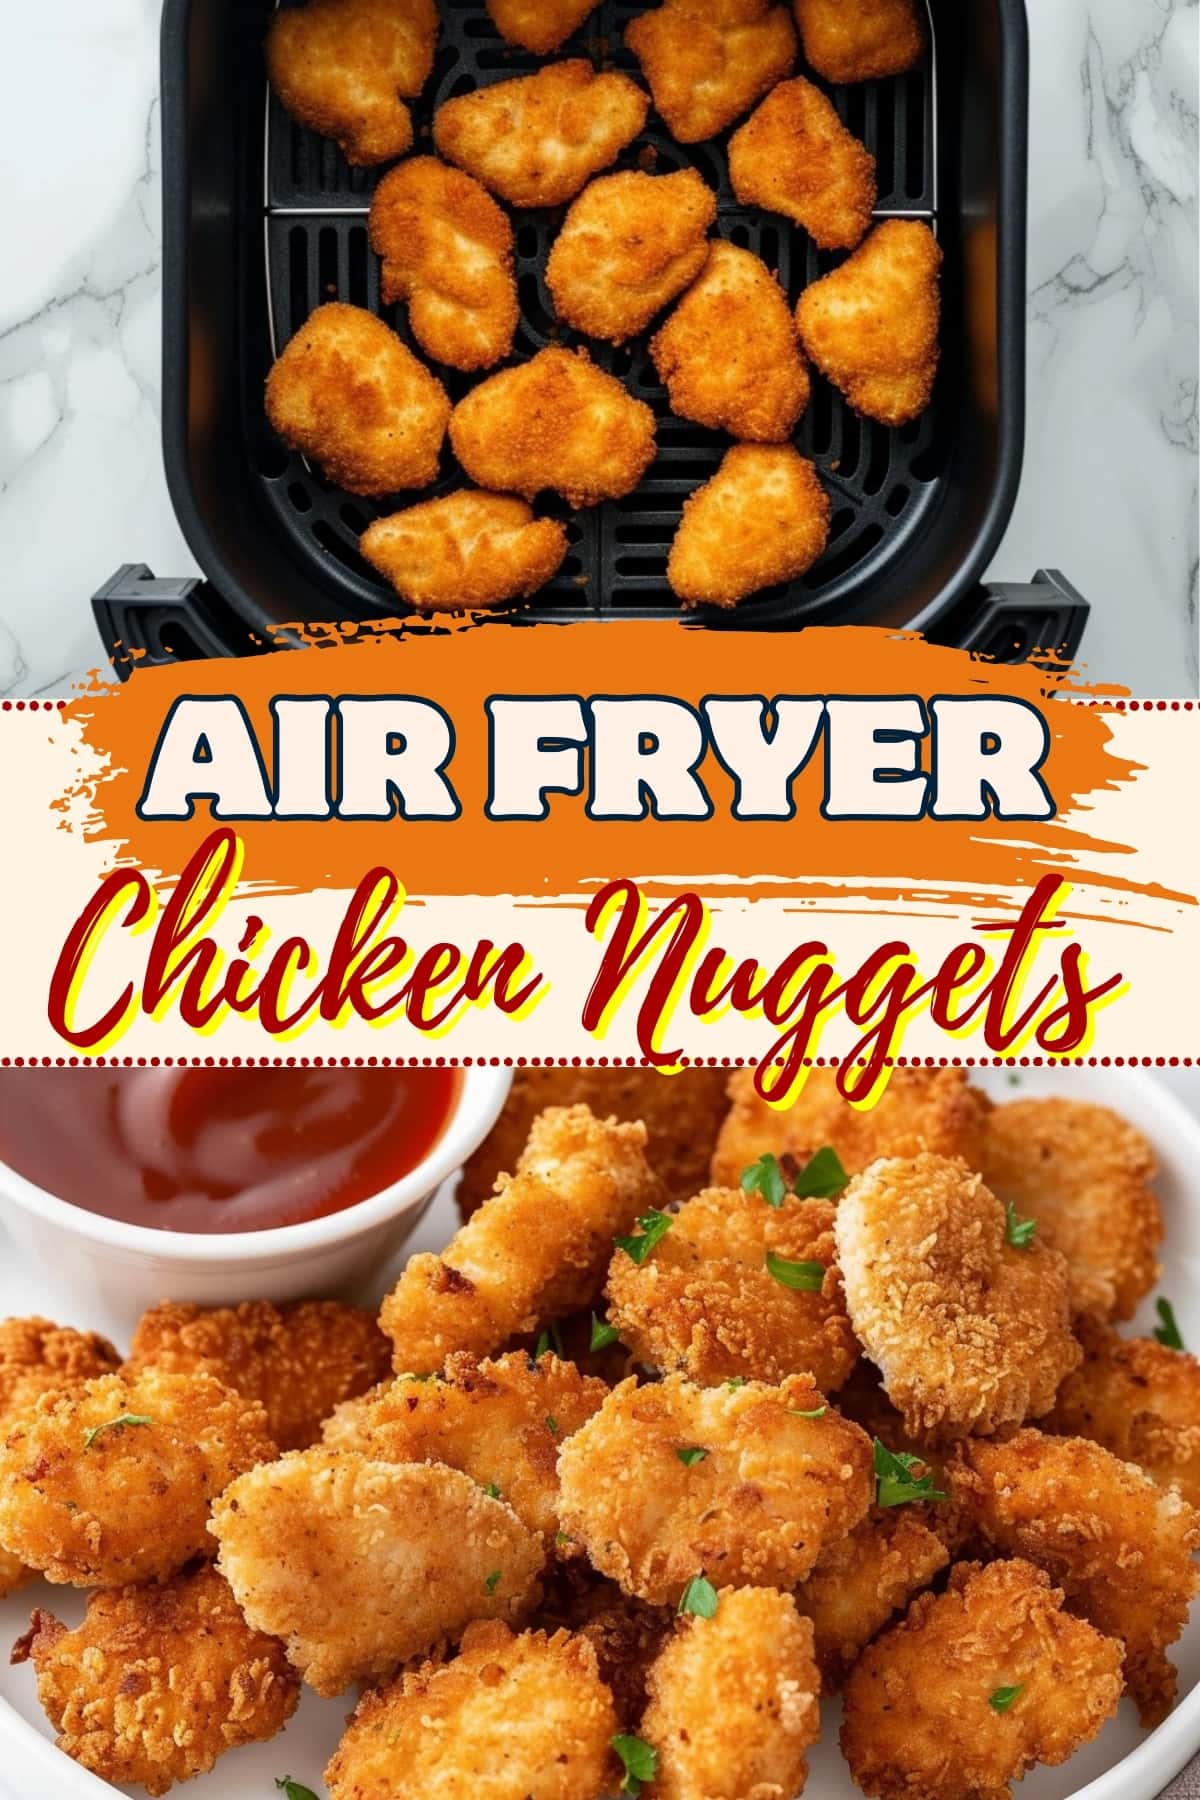 Air fryer chicken nuggets